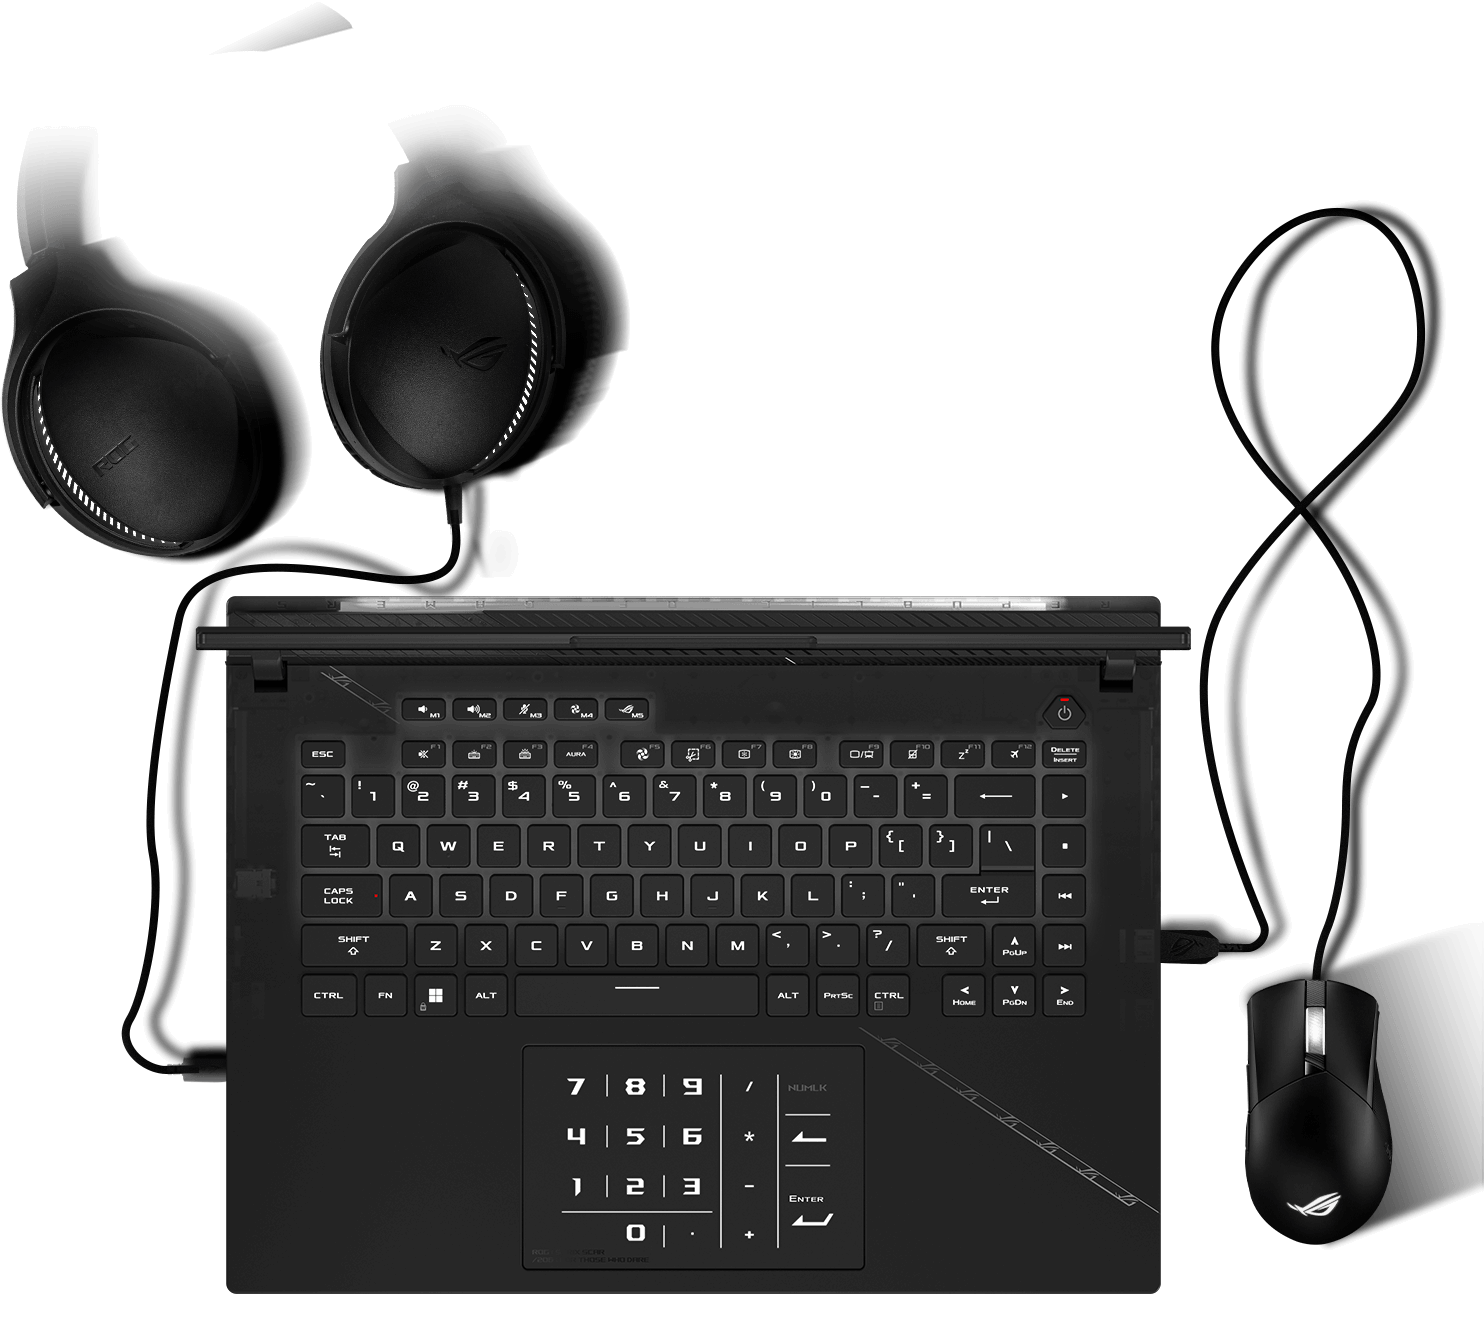 Клавиатура с визуальными эффектами подсветки Aura, синхронизированными с подсветкой мышки и гарнитуры.